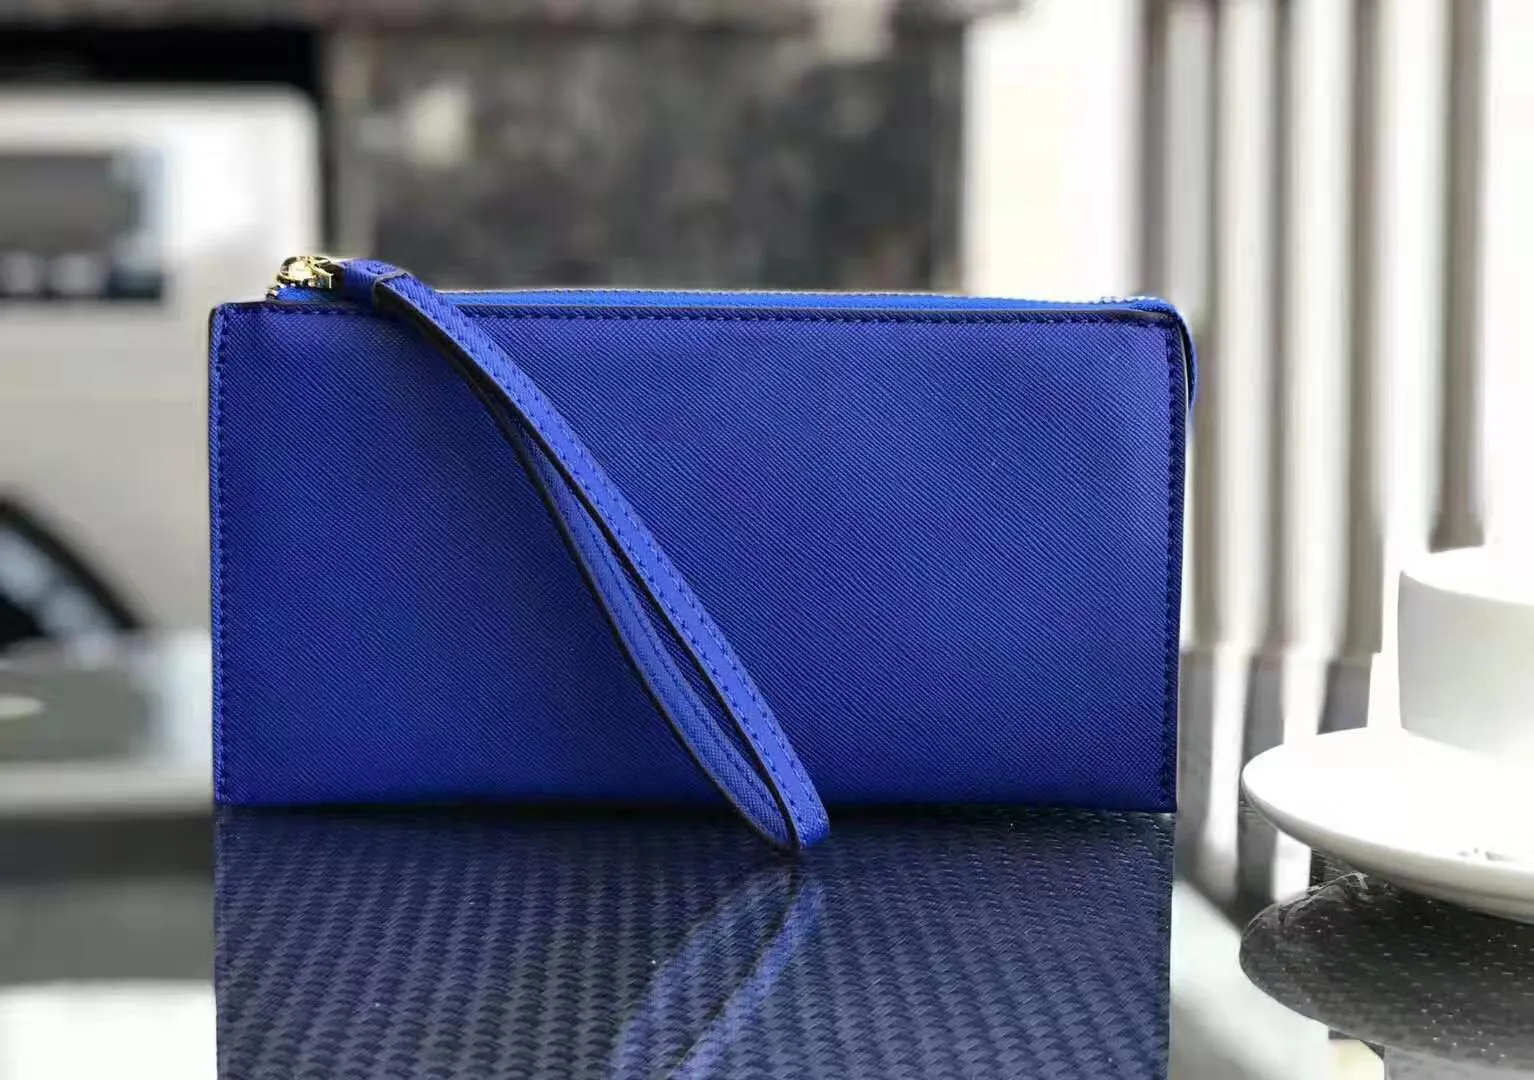 Portacnici del design del marchio Pugchi Crivelle borse la scheda borse di moda borse di moda anziane donne da i cinturino da polso2077